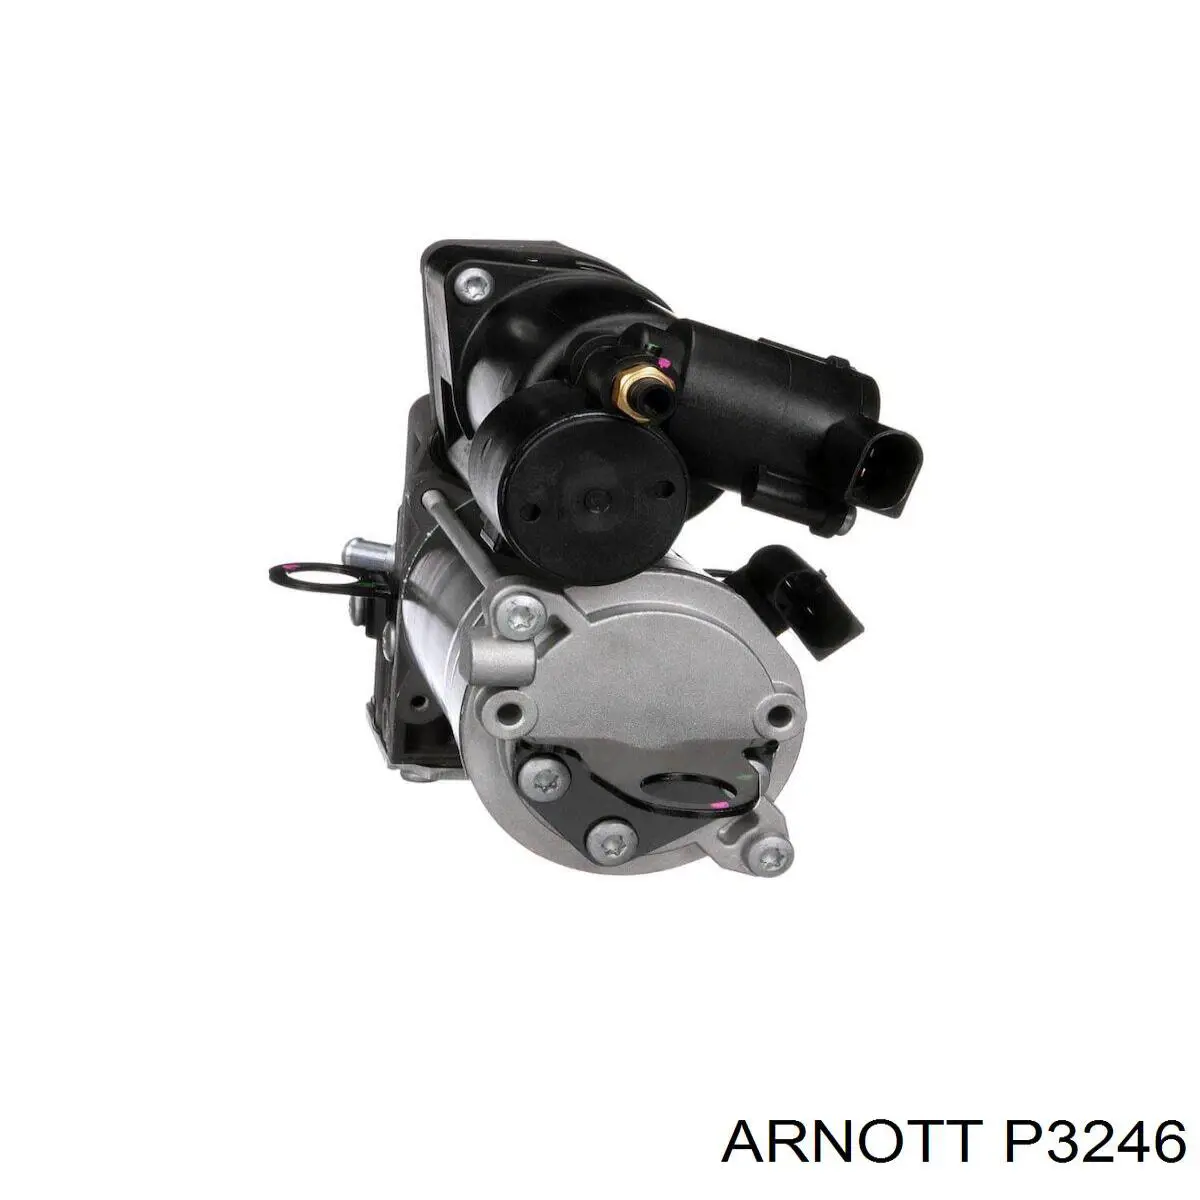 P-3246 Arnott compressor de bombeio pneumático (de amortecedores)